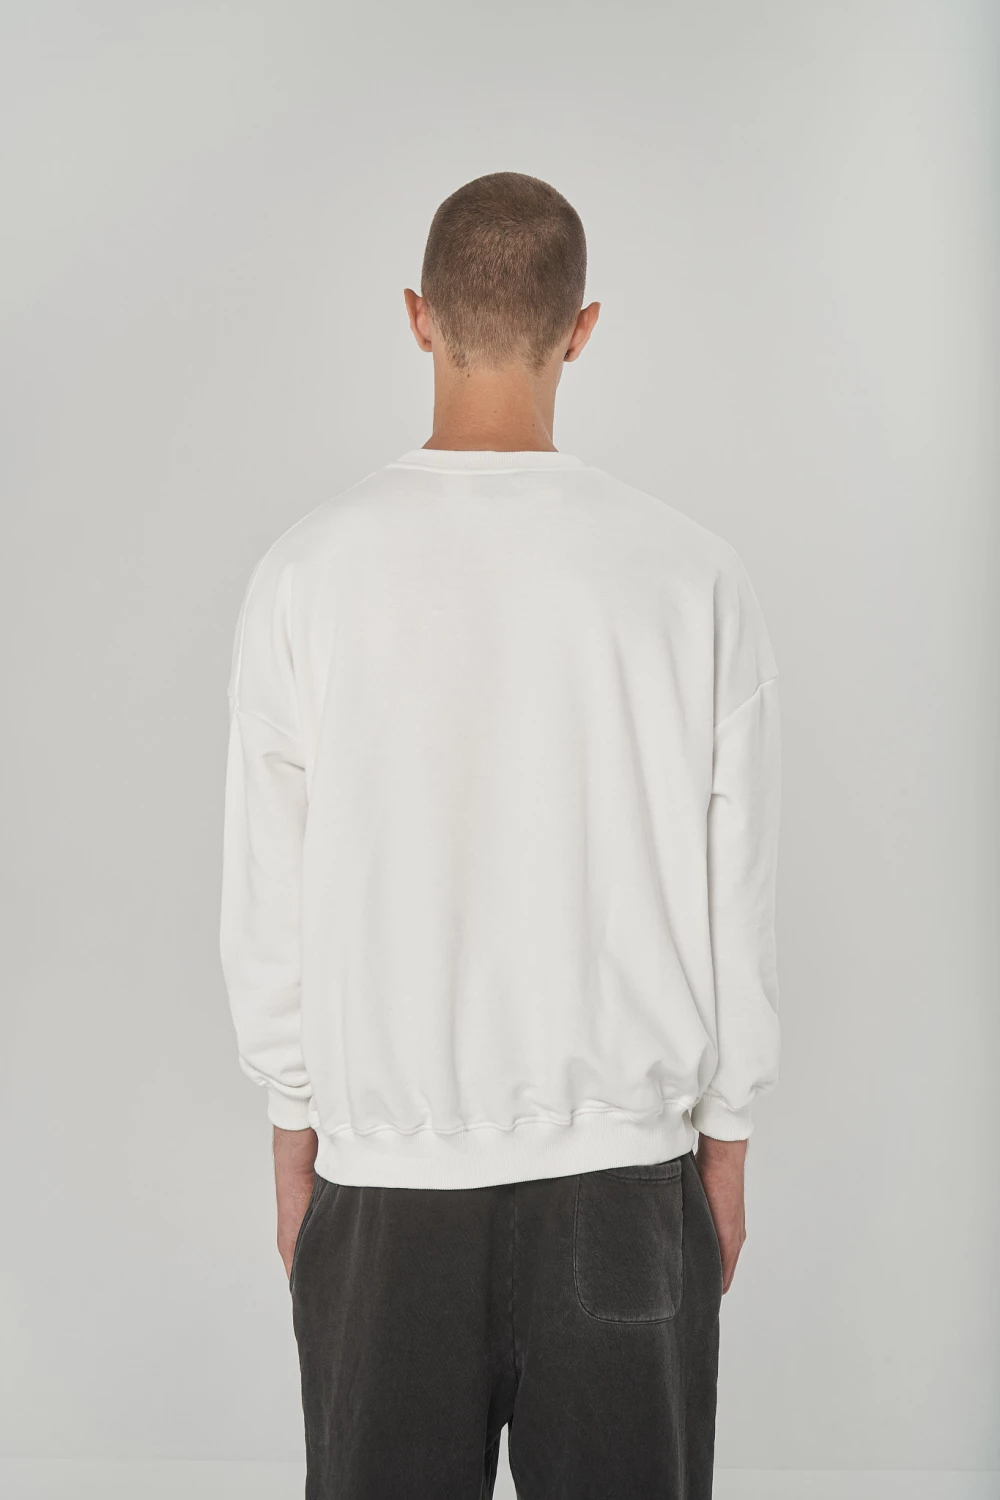 sweatshirt mriya in vanilla color